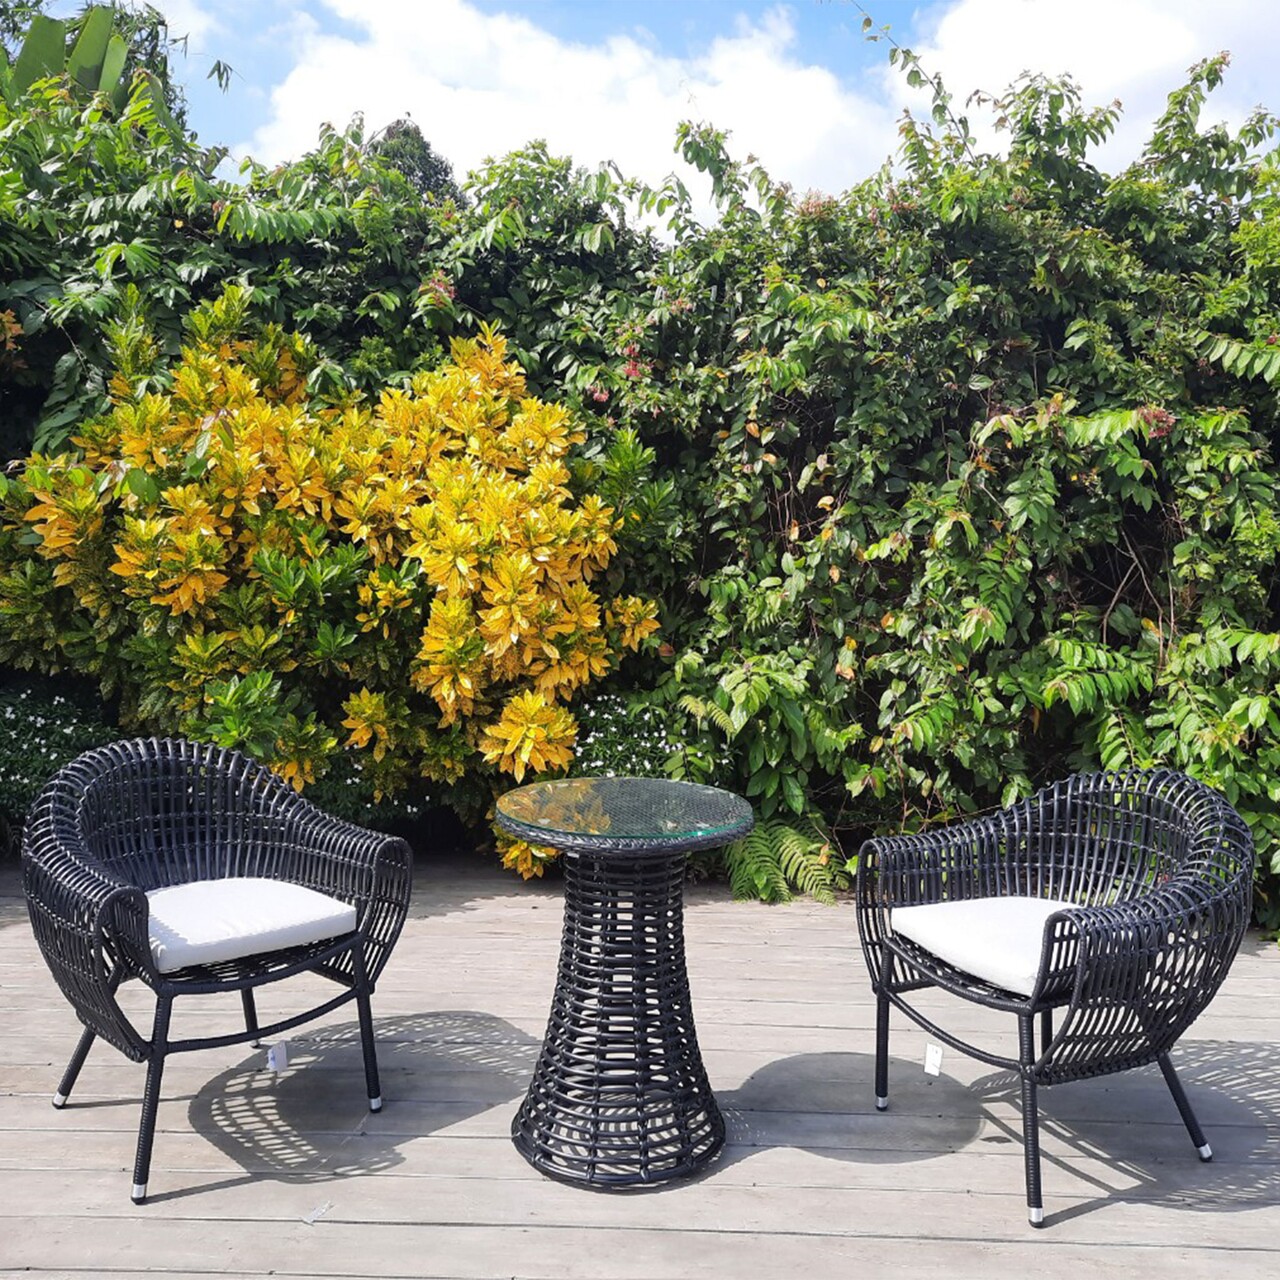 Maison alcudia kerti/terasz bútor szett, 2 fotel + asztalka, alcudia, alumínium, fekete/szürke